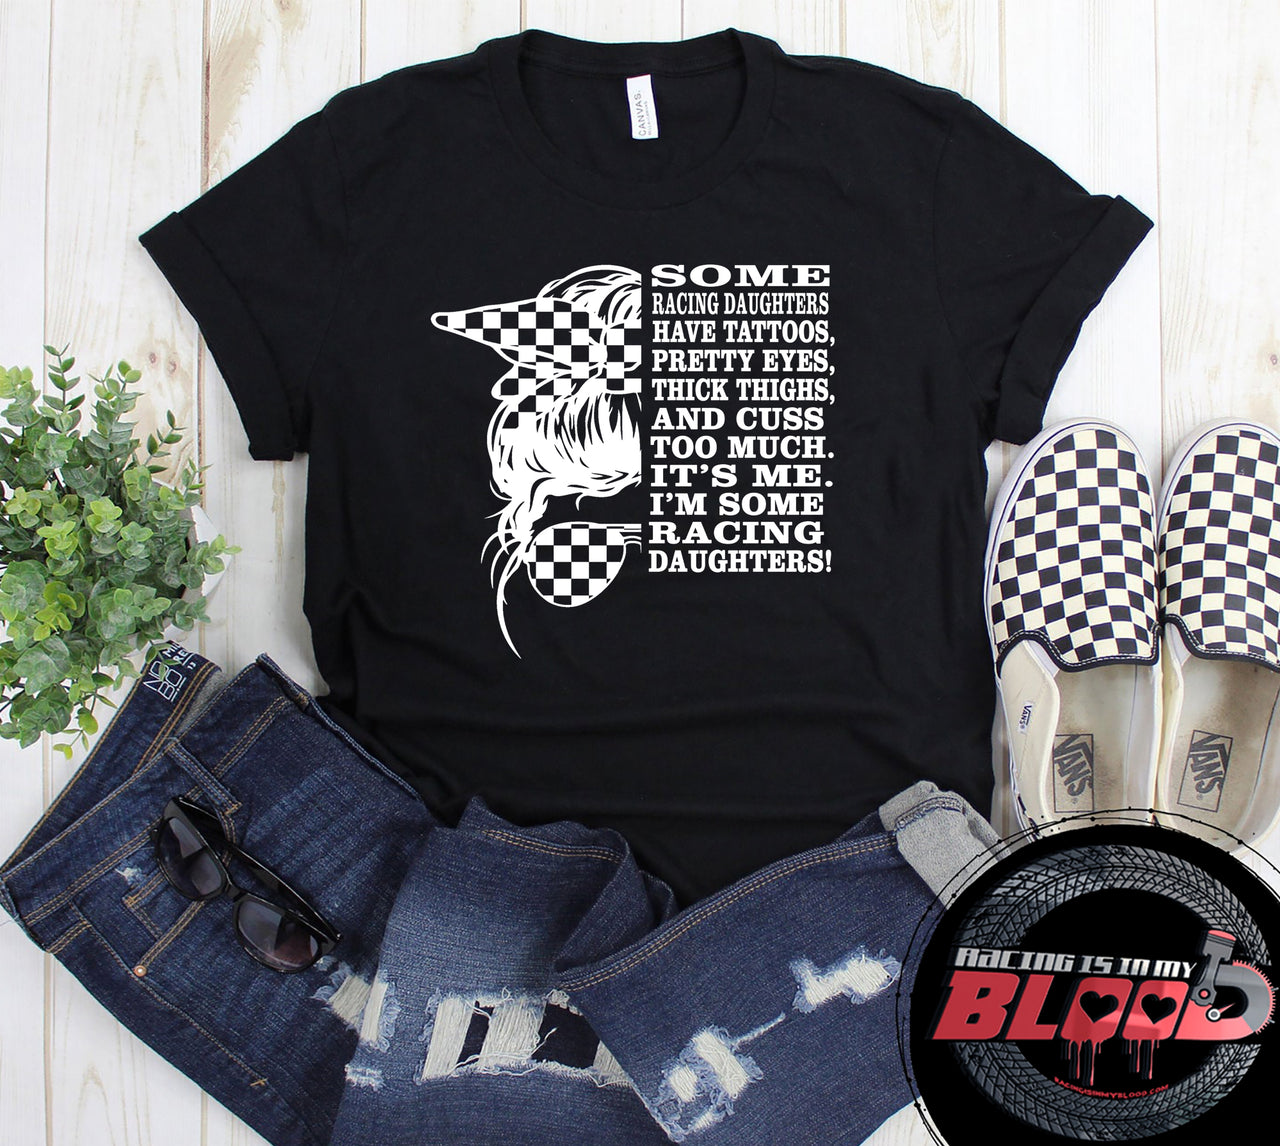 racing daughter t-shirts